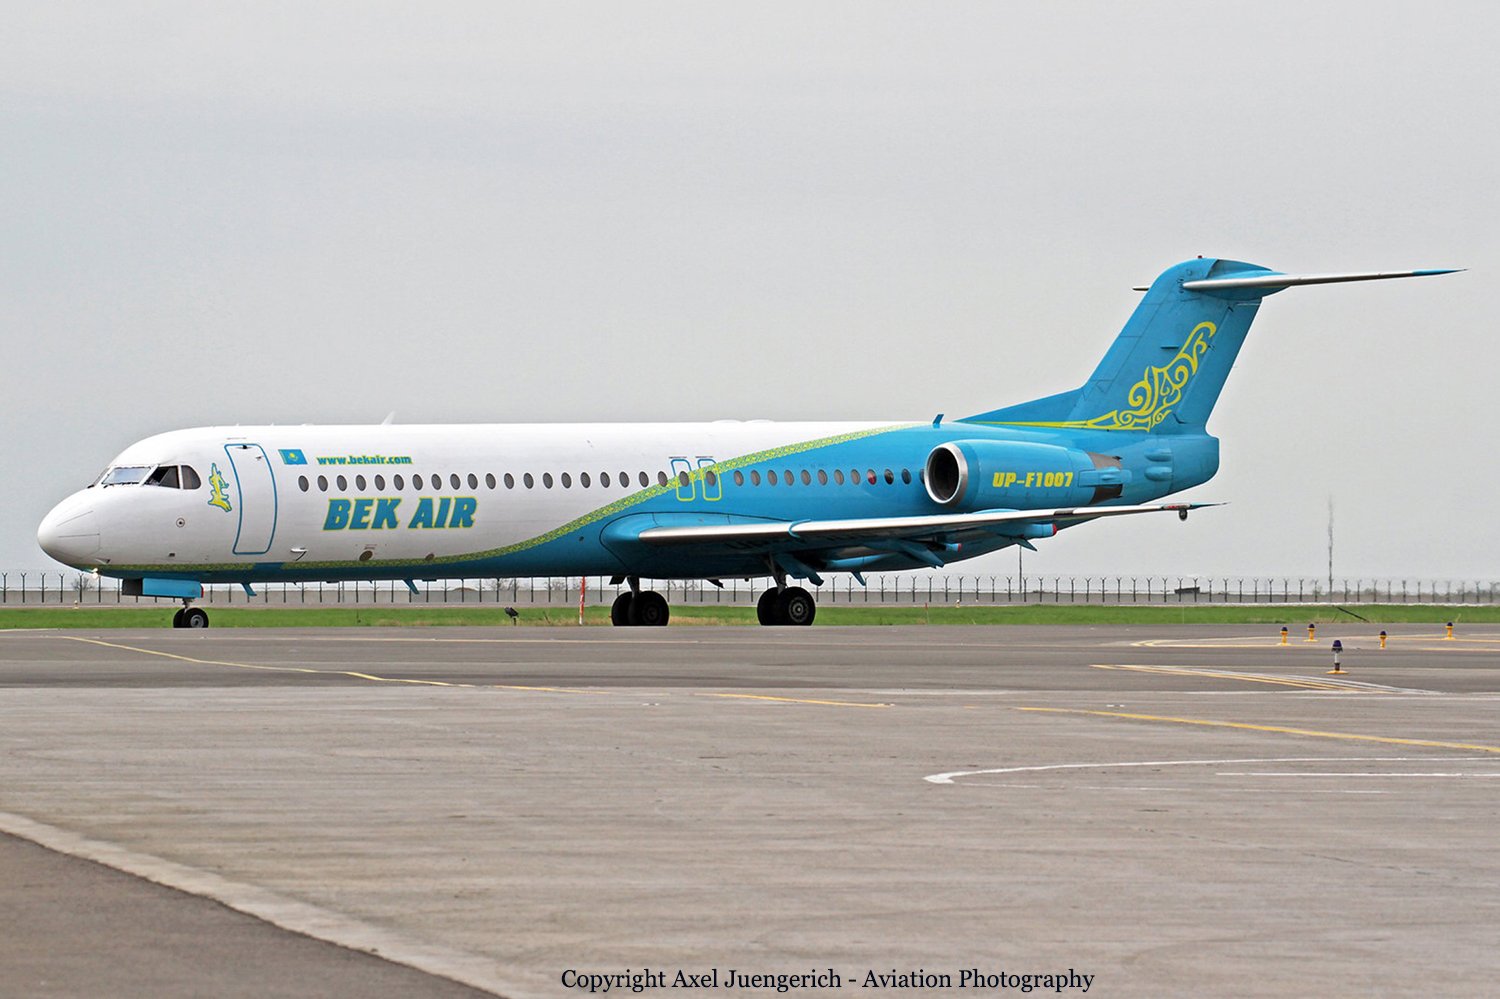 Самолеты через казахстан. Fokker 100 самолет. Bek Air авиакомпании Казахстана. Bek Air Flight 2100. Yeti Airlines самолеты.